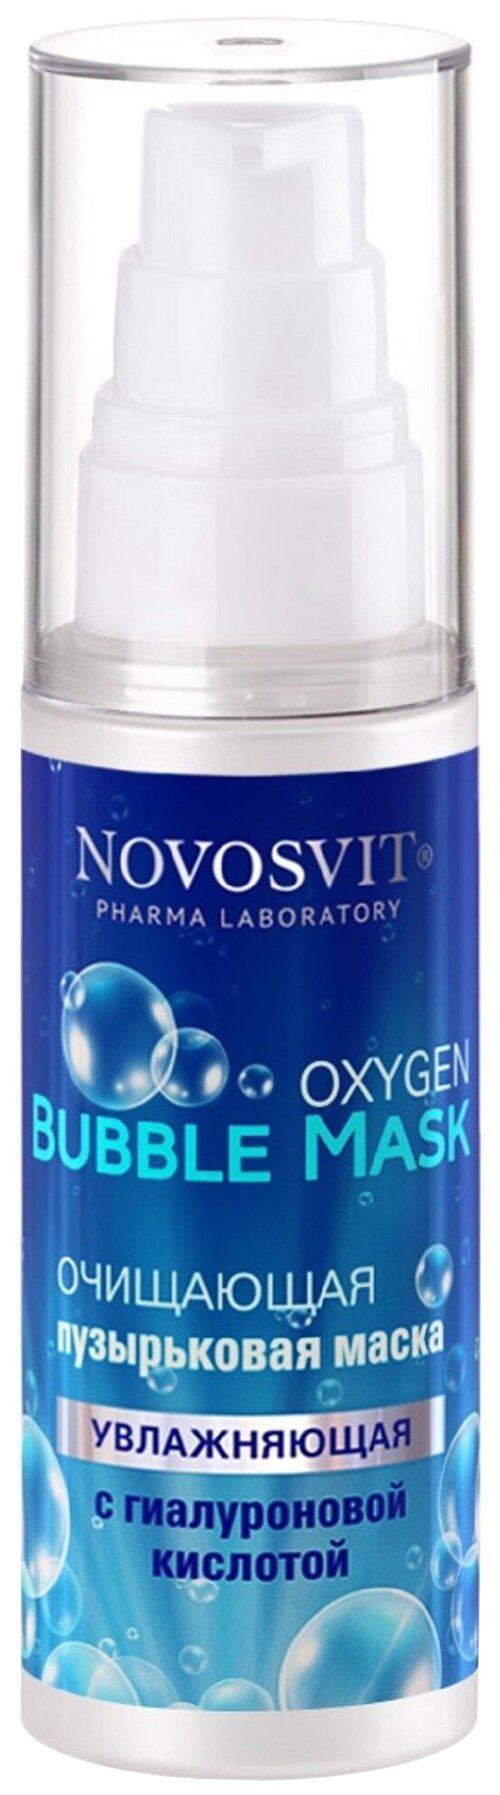 Novosvit Oxygen Bubble Mask Очищающая пузырьковая маска Увлажняющая с гиалуроновой кислотой, 40 г, 40 мл